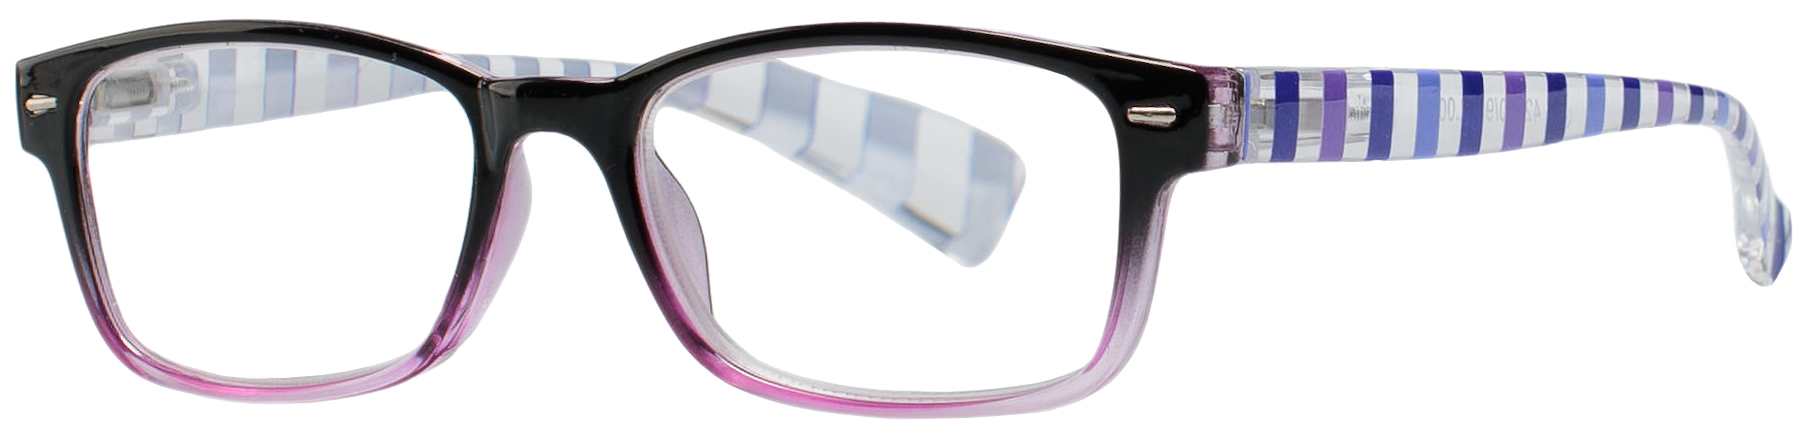 Купить Очки корригирующие Кемнер Оптикс пластик для чтения +3, 5 градиент черн-фиолетовые 42640/12, Kemner Optics